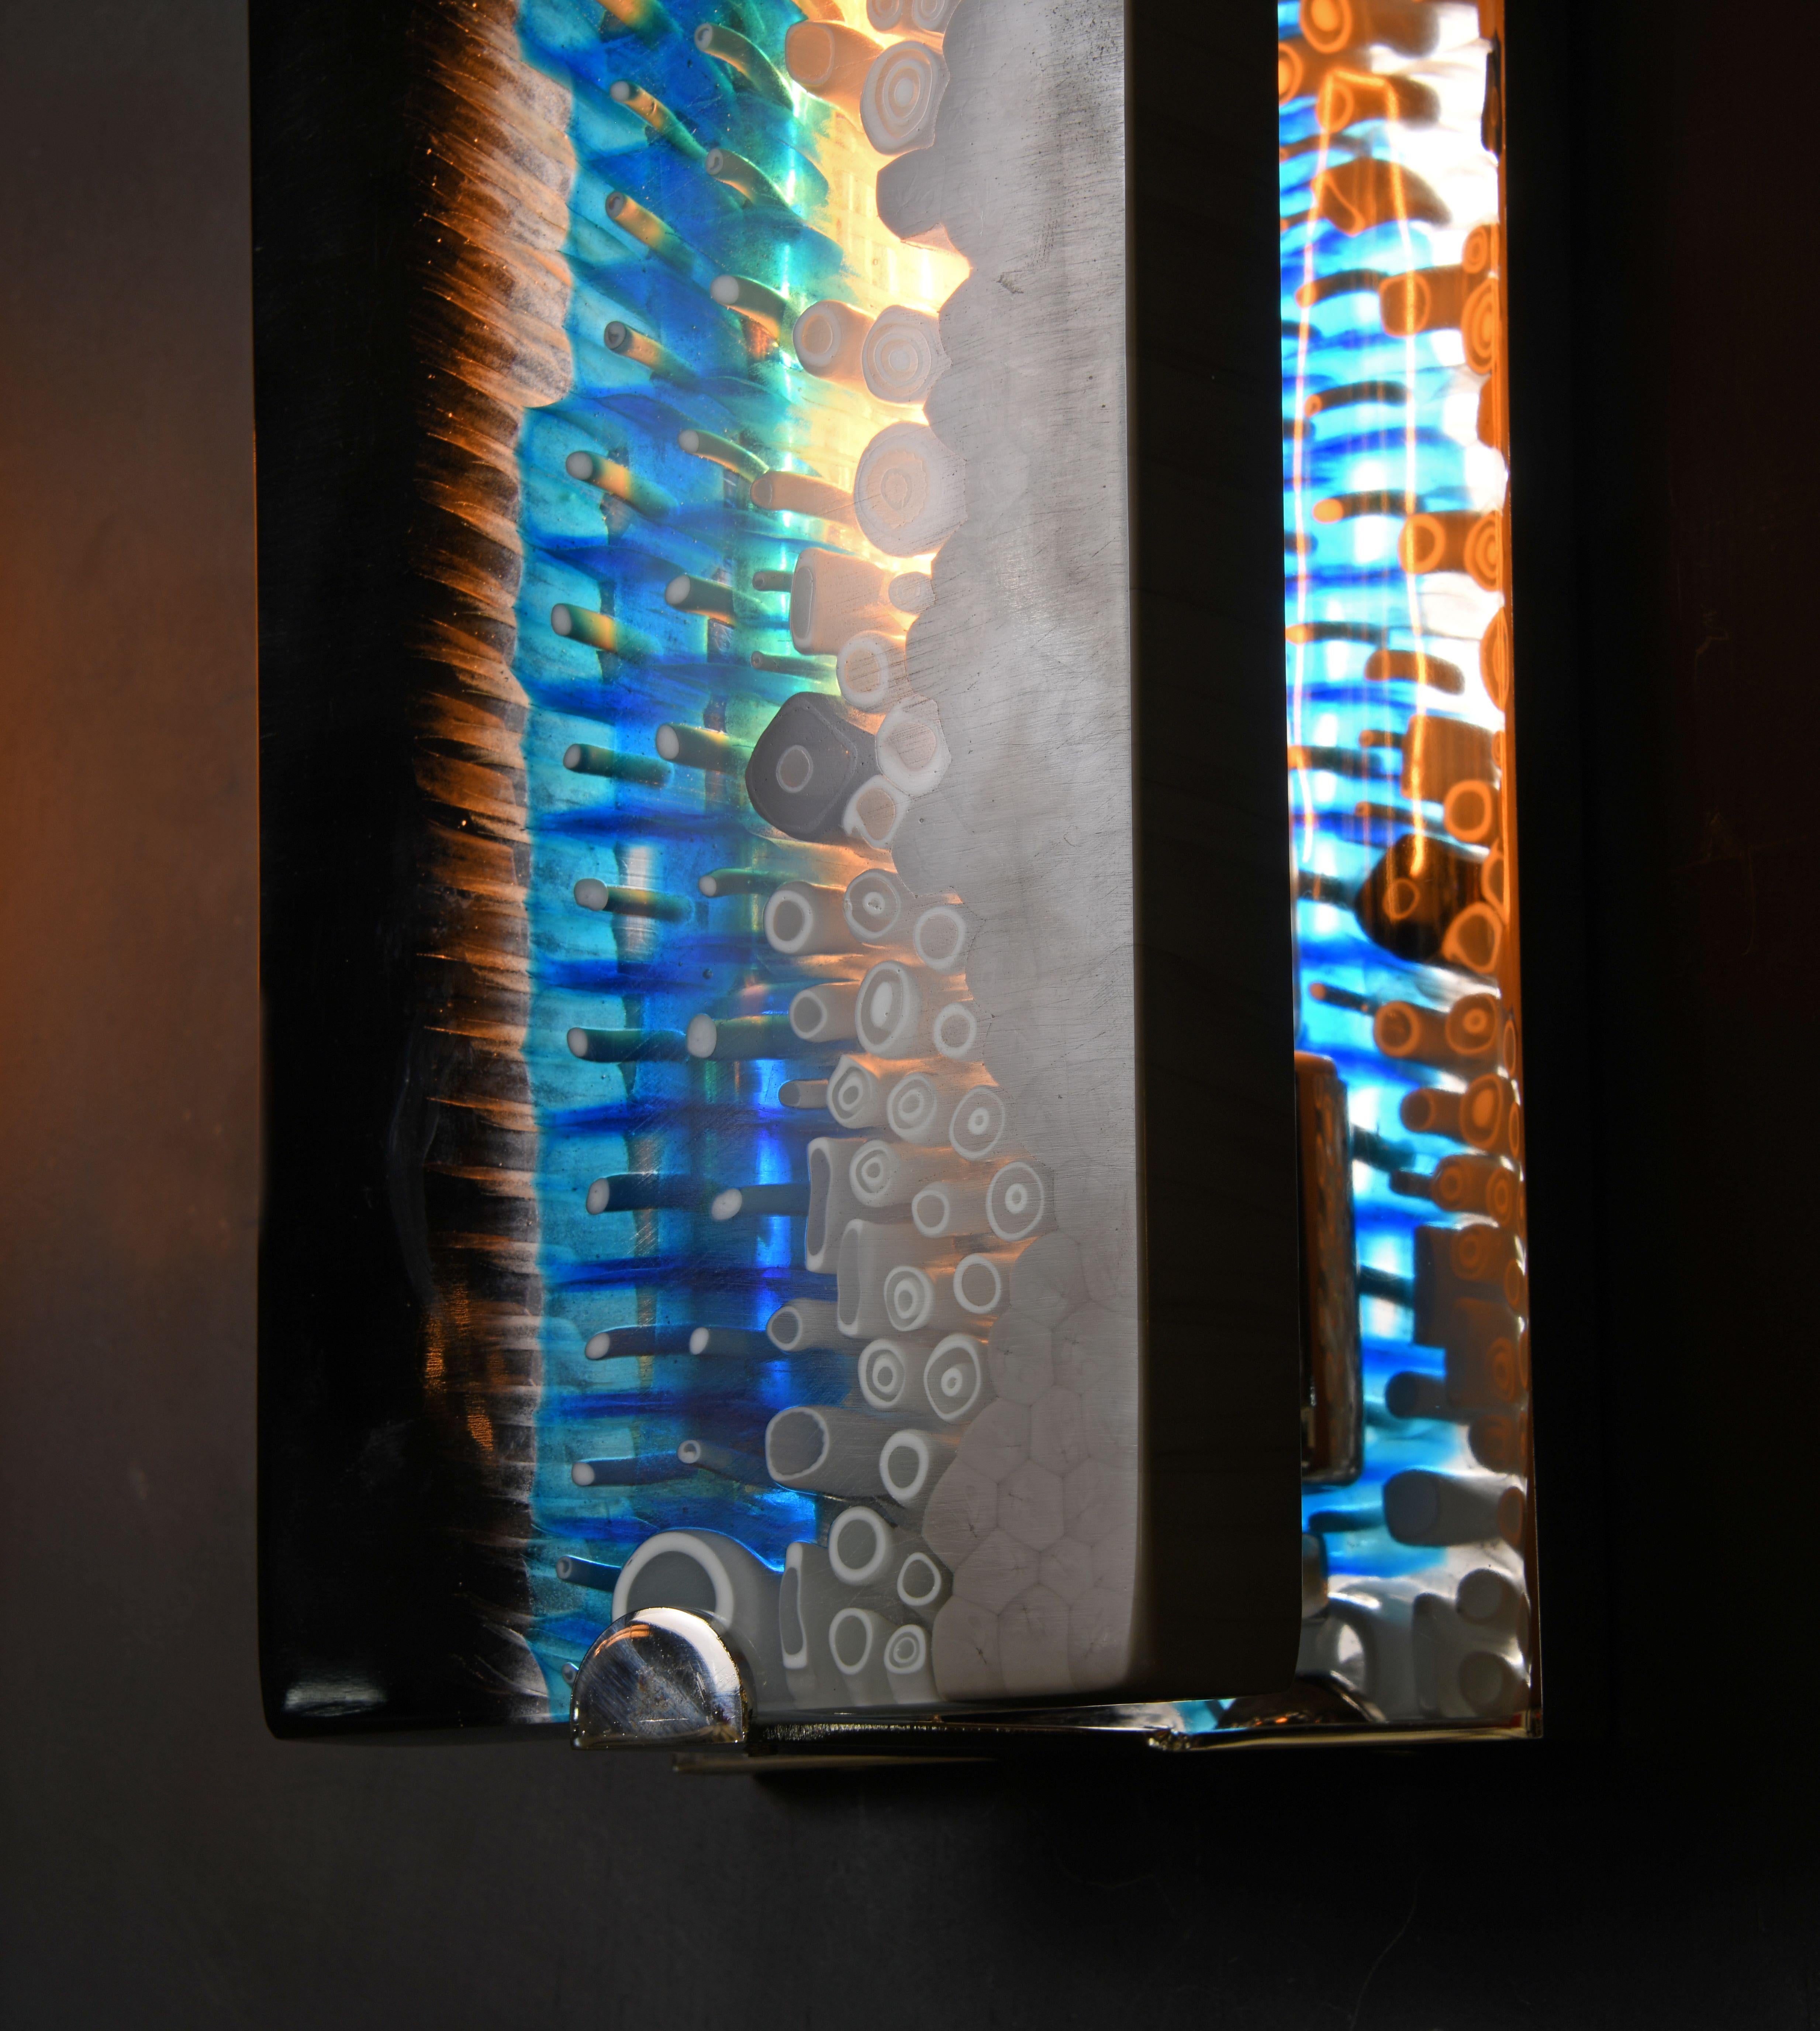 Des dalles brillamment colorées -captant la magie de l'ancien procédé du verre de Murano Millefiori de Brilliante- admirent leur reflet dans des cadres de nickel narcissique.

Les modèles de la collection sont fabriqués individuellement à la main